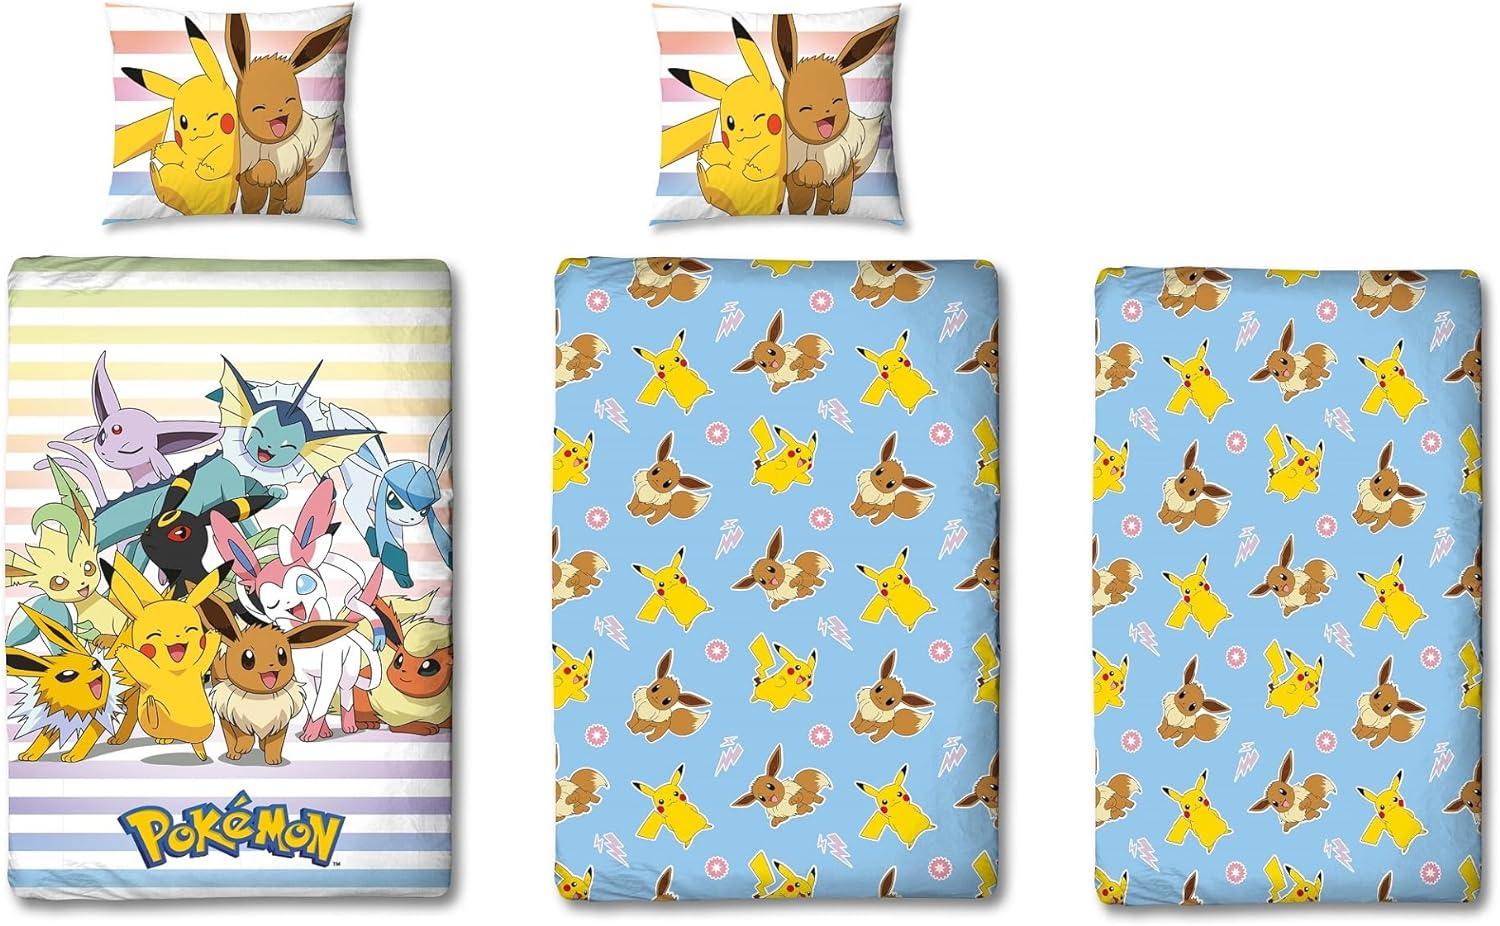 Pokemon Bettwäsche Set 3-teilig mit Spannbettlaken 135x200 80x80 cm buntes Motiv mit Pikachu & Friends aus 100% Baumwolle Bild 1